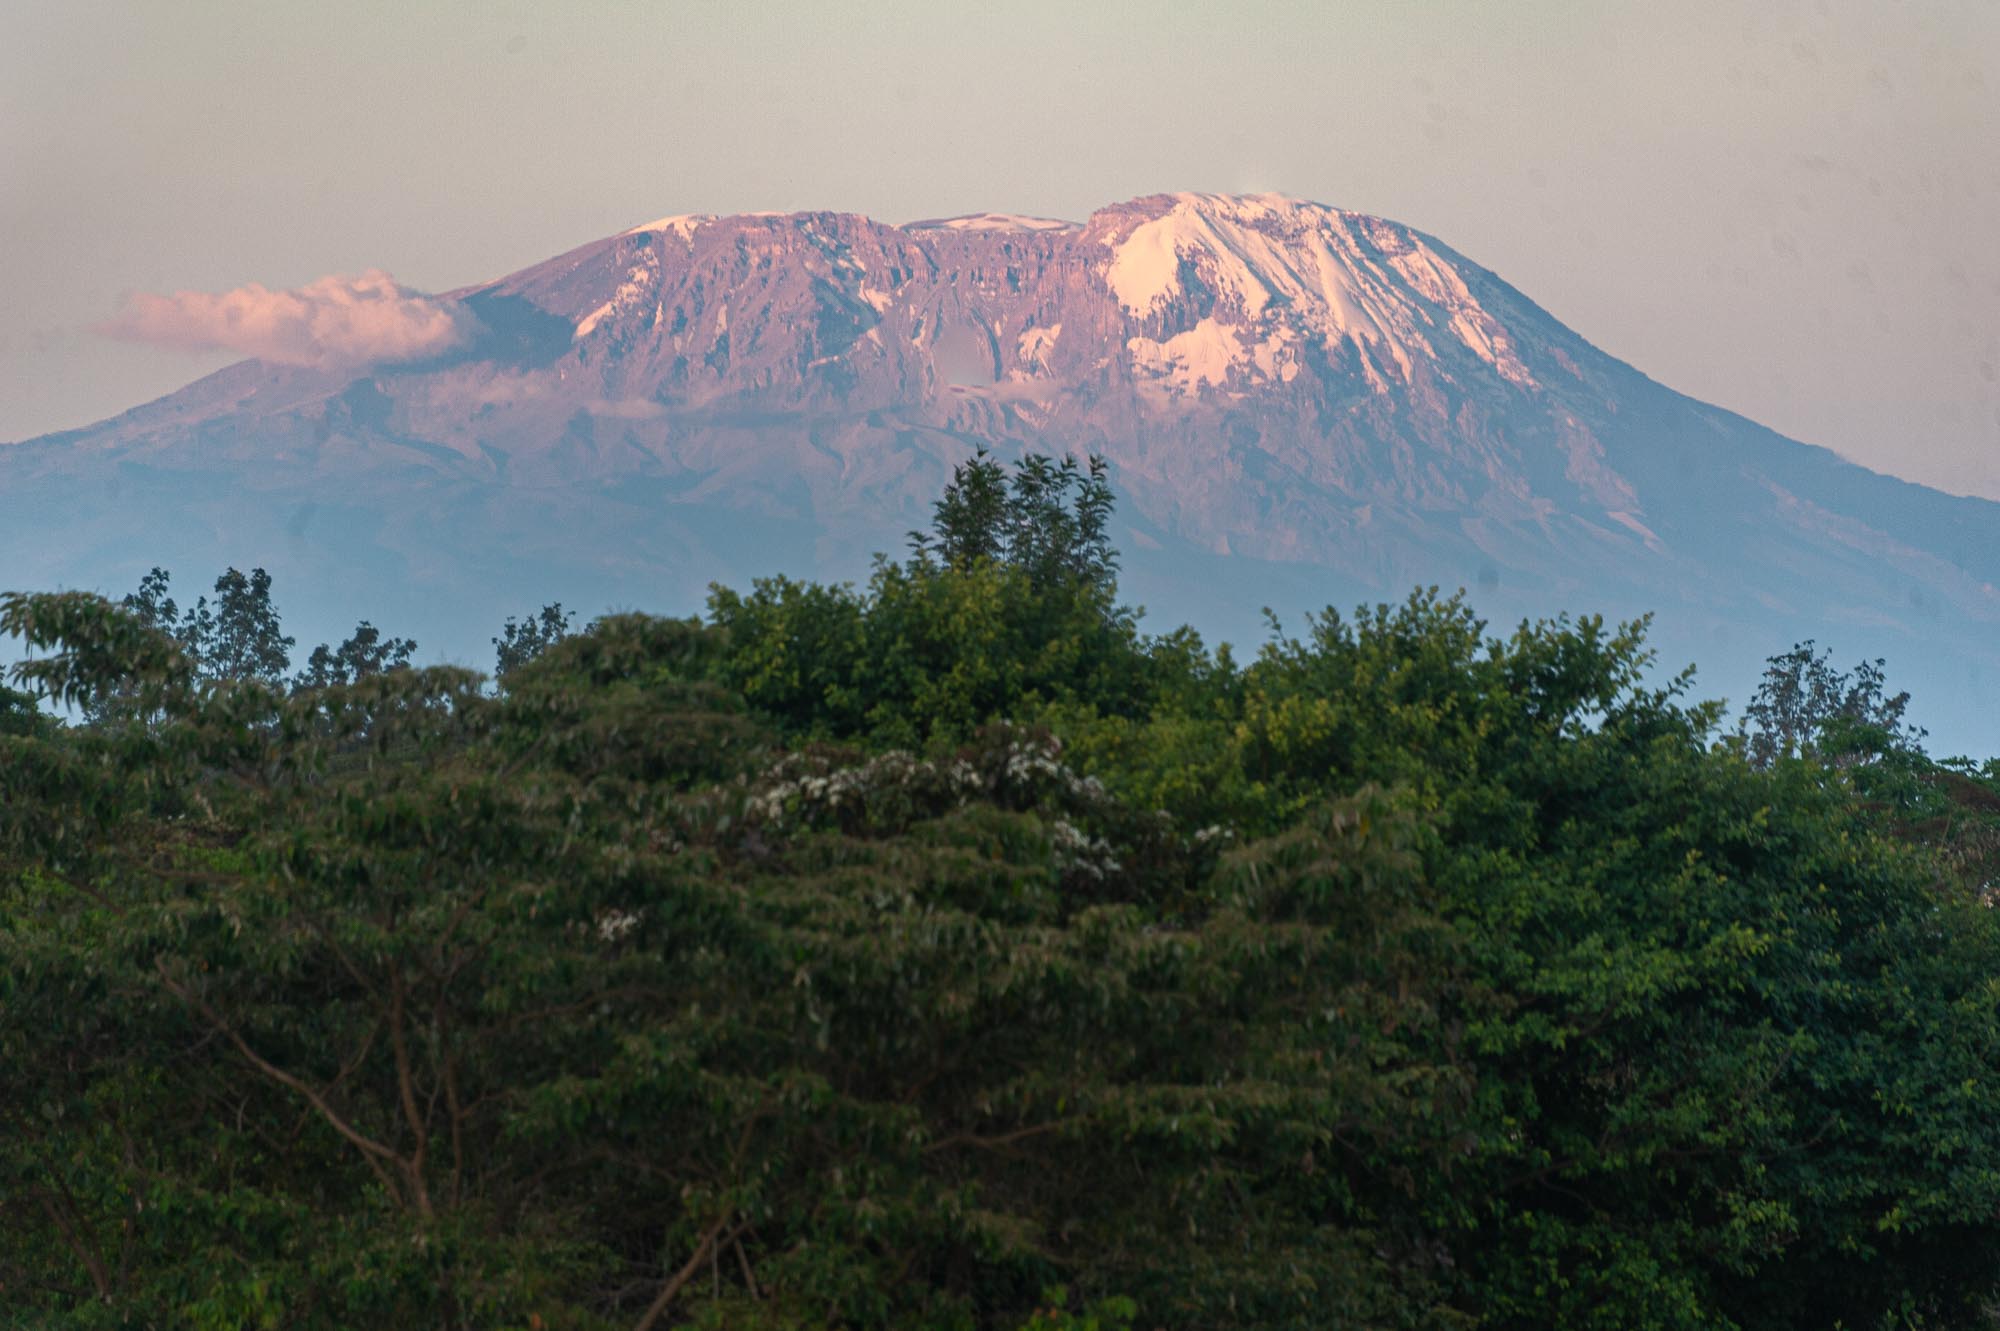 Kilimanjaro at sunset